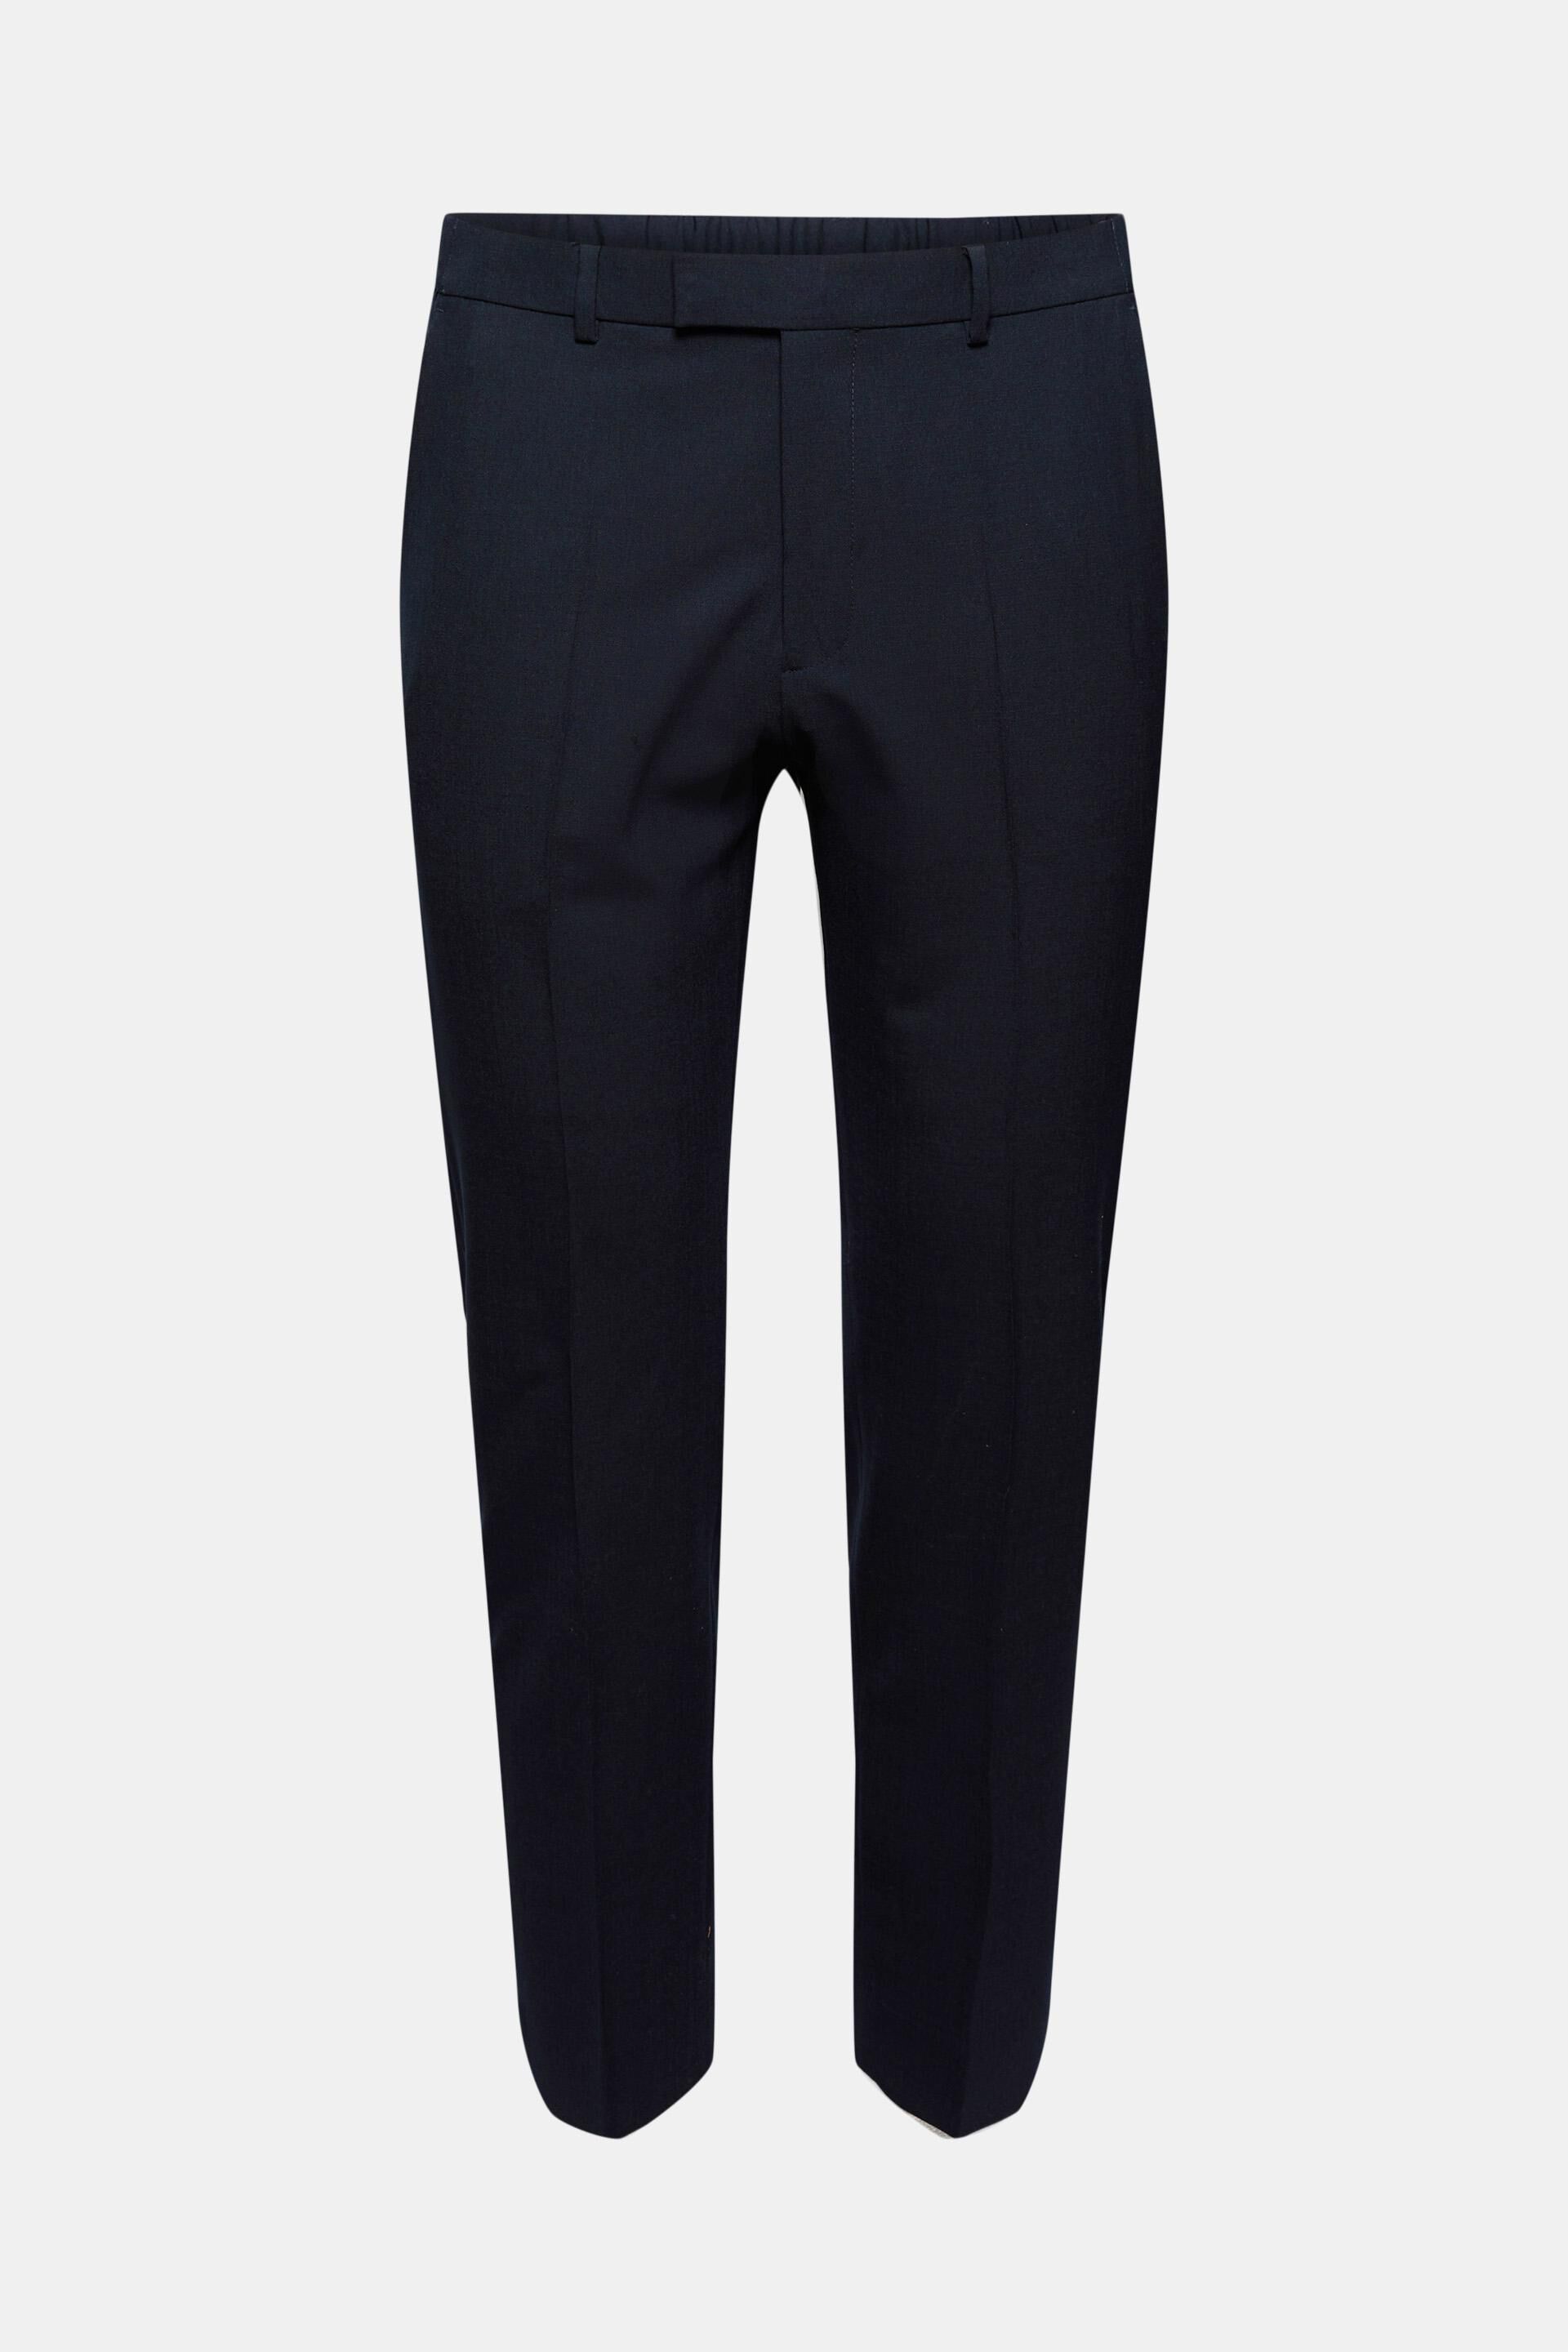 SELLNAU Spodnie garniturowe czarny W stylu casual Moda Garnitury Spodnie garniturowe 